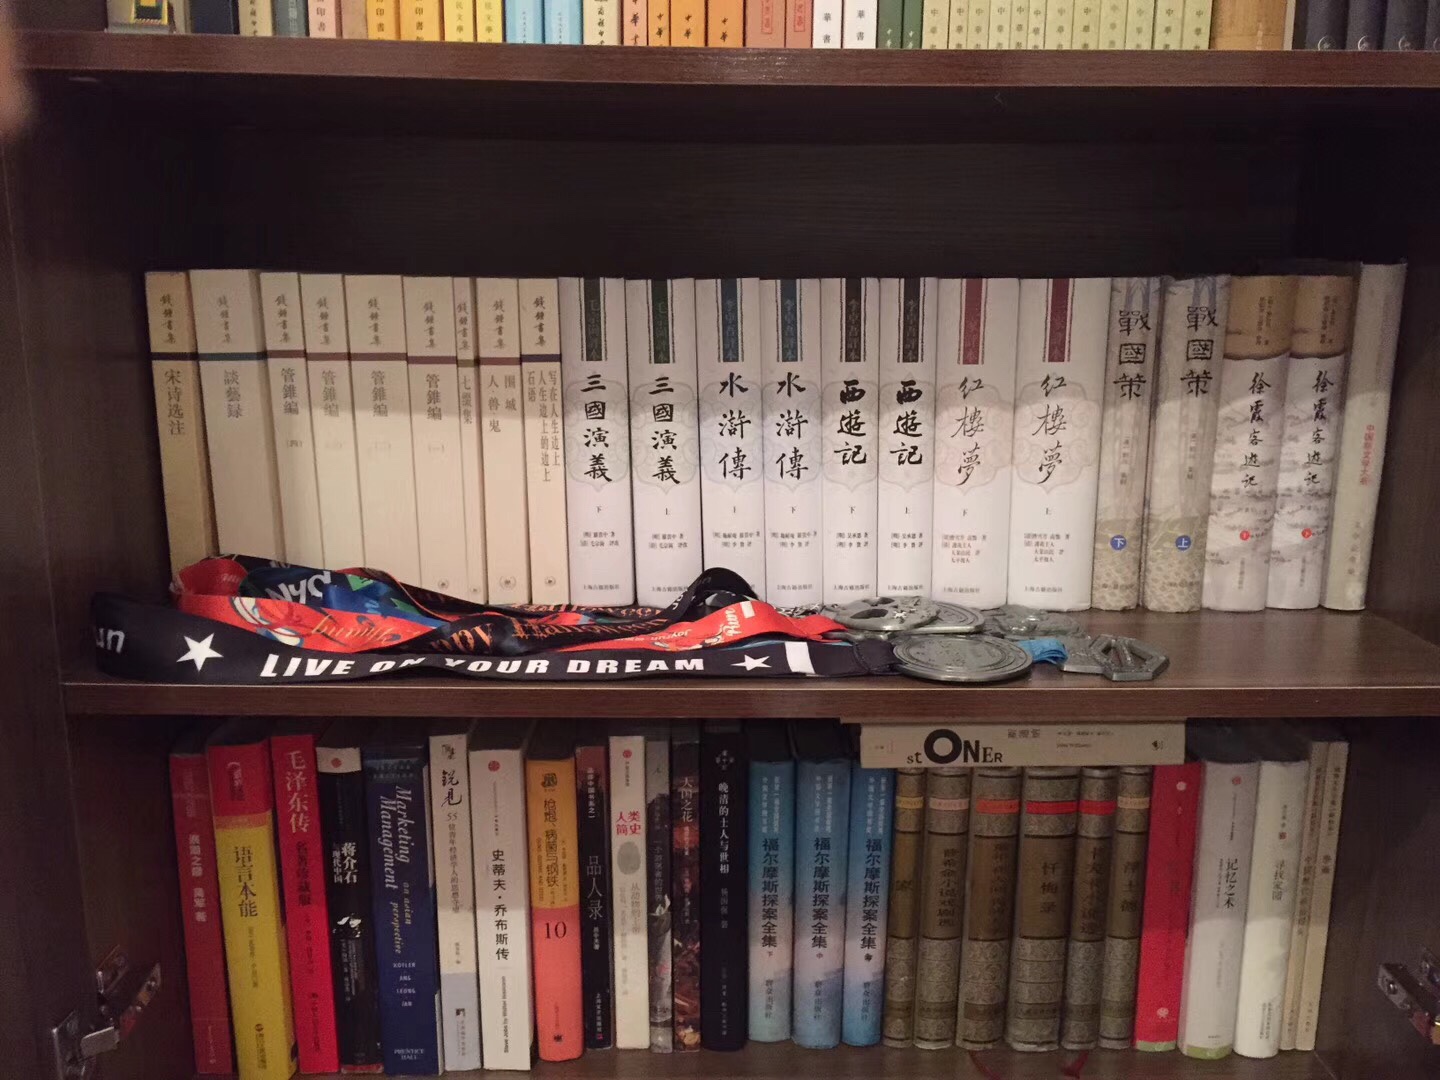 商务印书馆的汉译世界学术名著，为最全最经典的学术名著，有多少买多少，家里藏了100多本了。